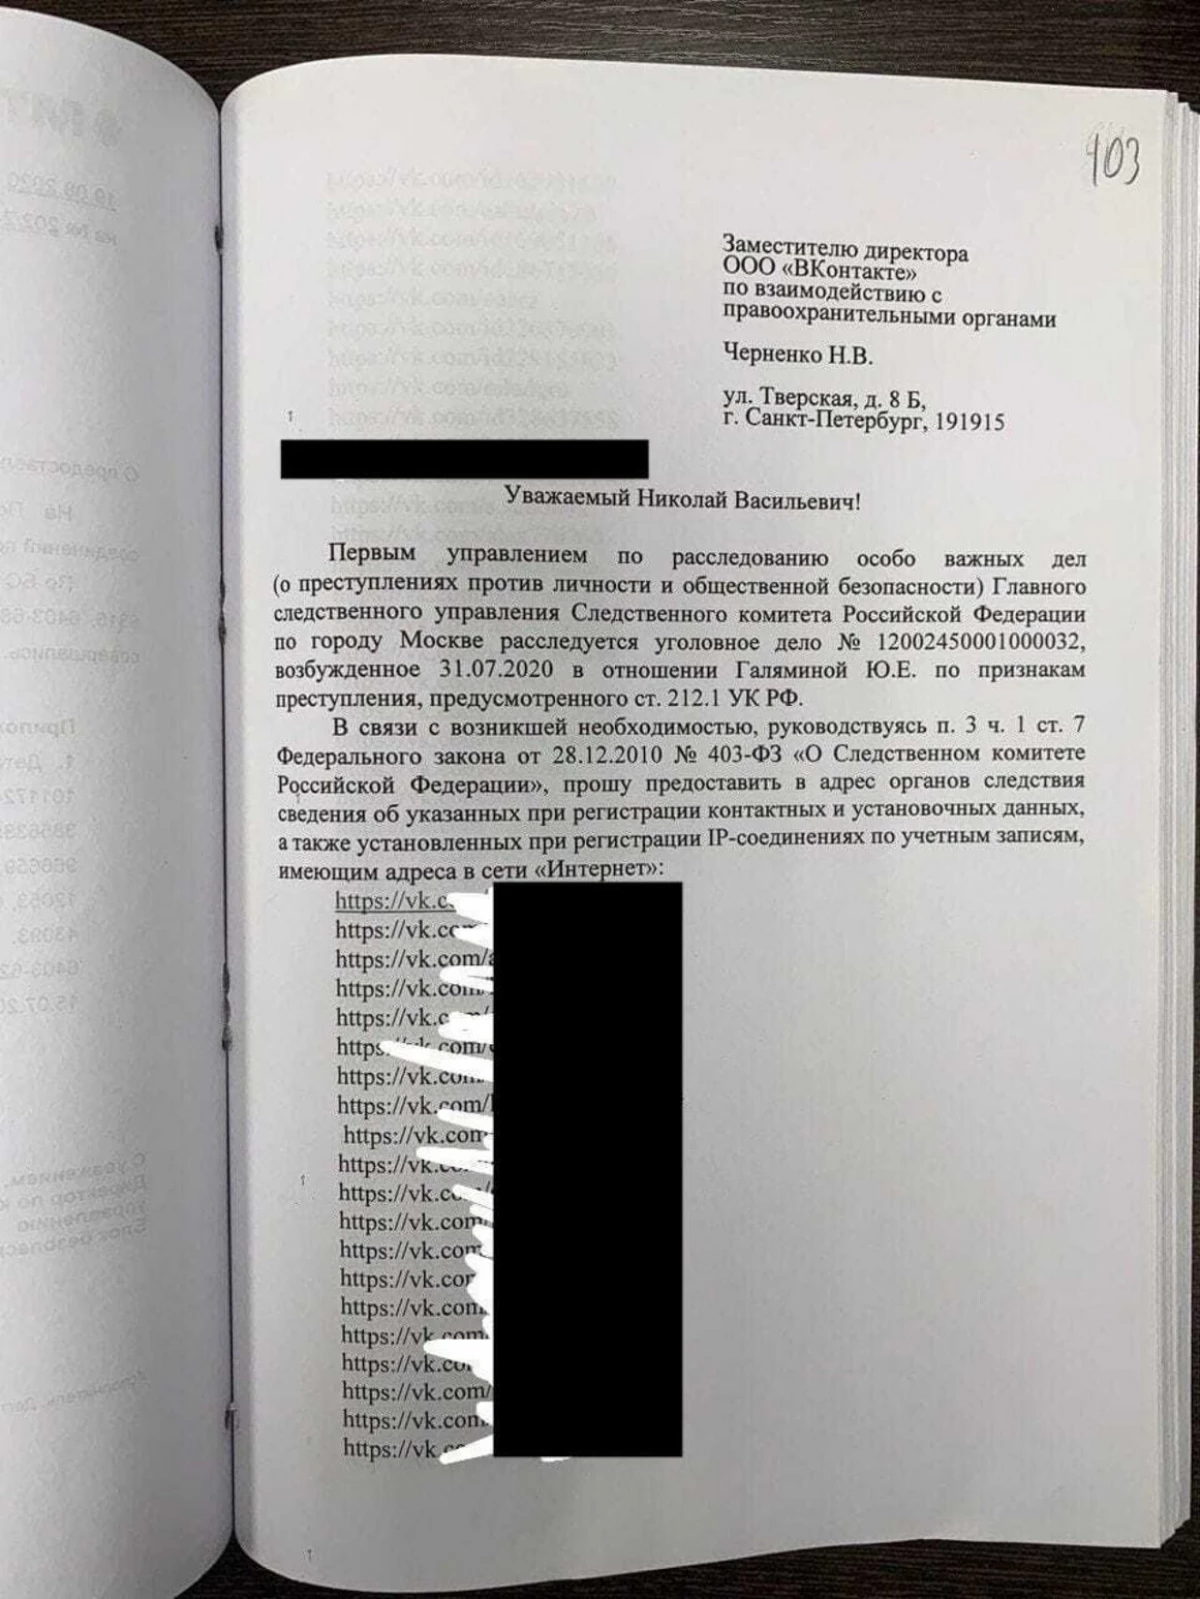 Στην περίπτωση του αναπληρωτή του Galyan, υπάρχουν στοιχεία σχετικά με εκείνους που επισκέφτηκαν τη σελίδα της 